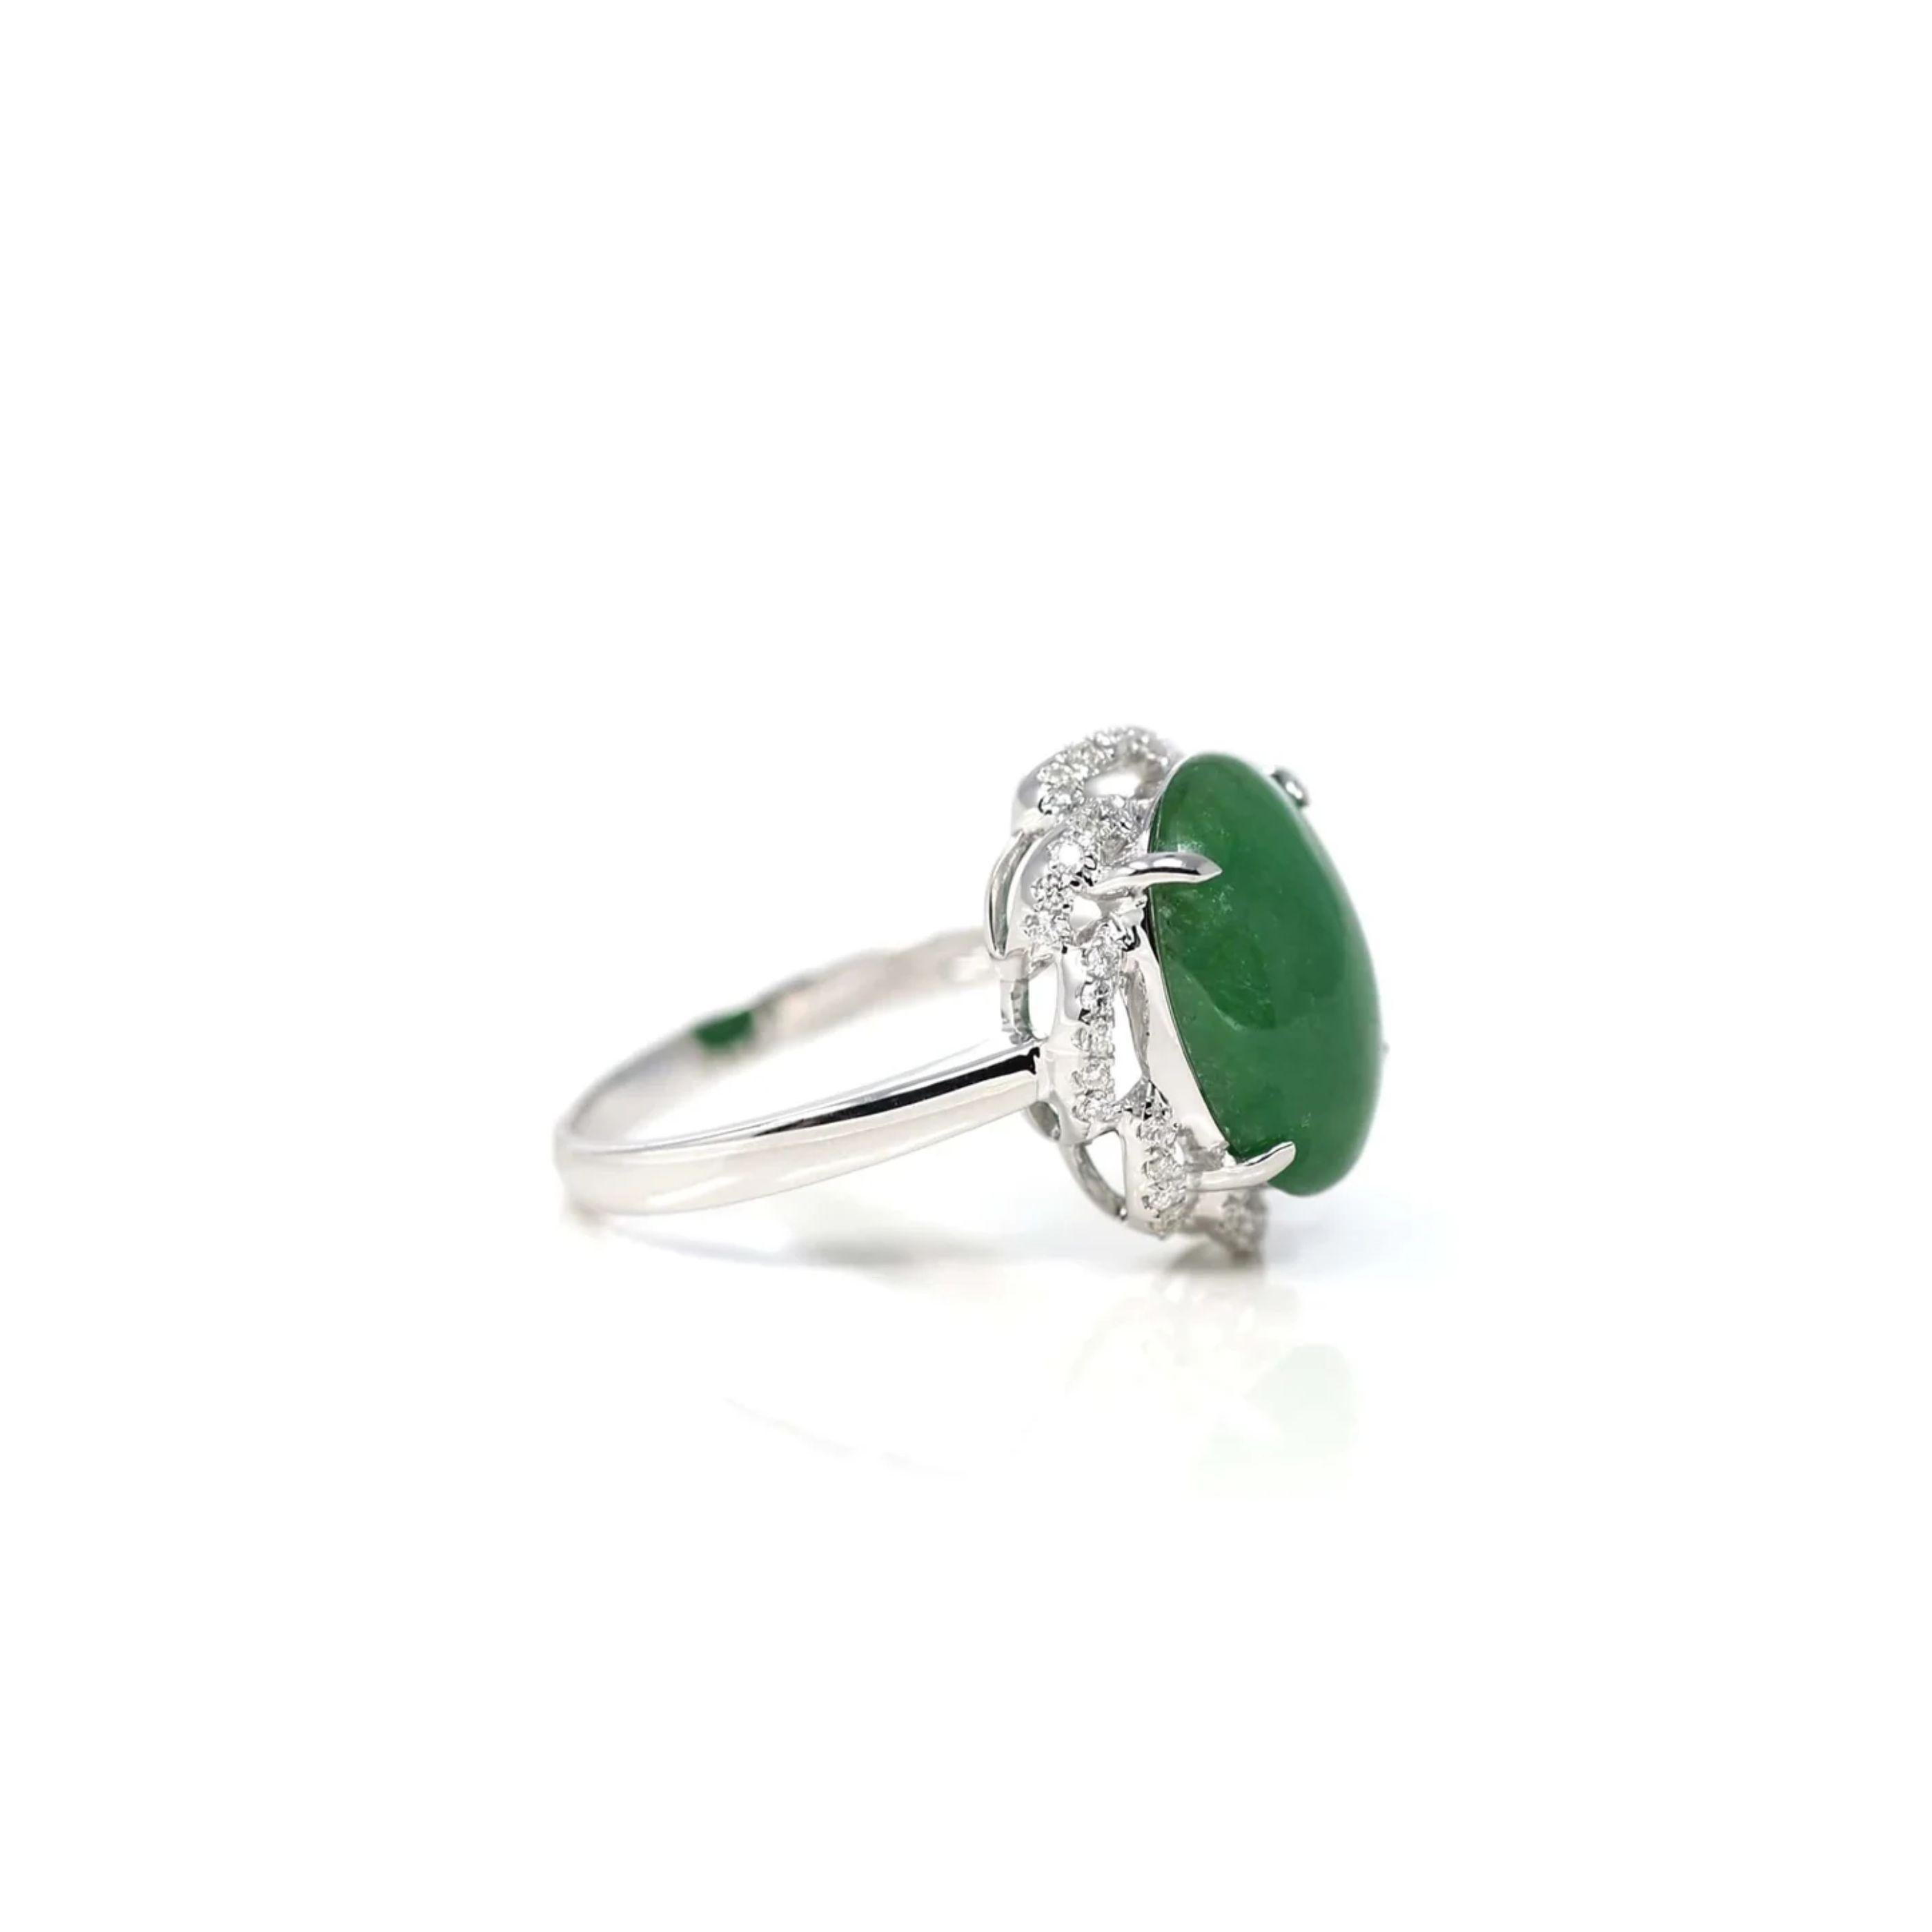 * ORIGINAL DESIGN --- Inspiriert von der natürlichen Schönheit des echten burmesischen Imperial Green Jadeit, ist die satte, schöne apfelgrüne Farbe auf keinem anderen Stein zu finden. Dieser einmalige Verlobungsring verbindet die natürliche